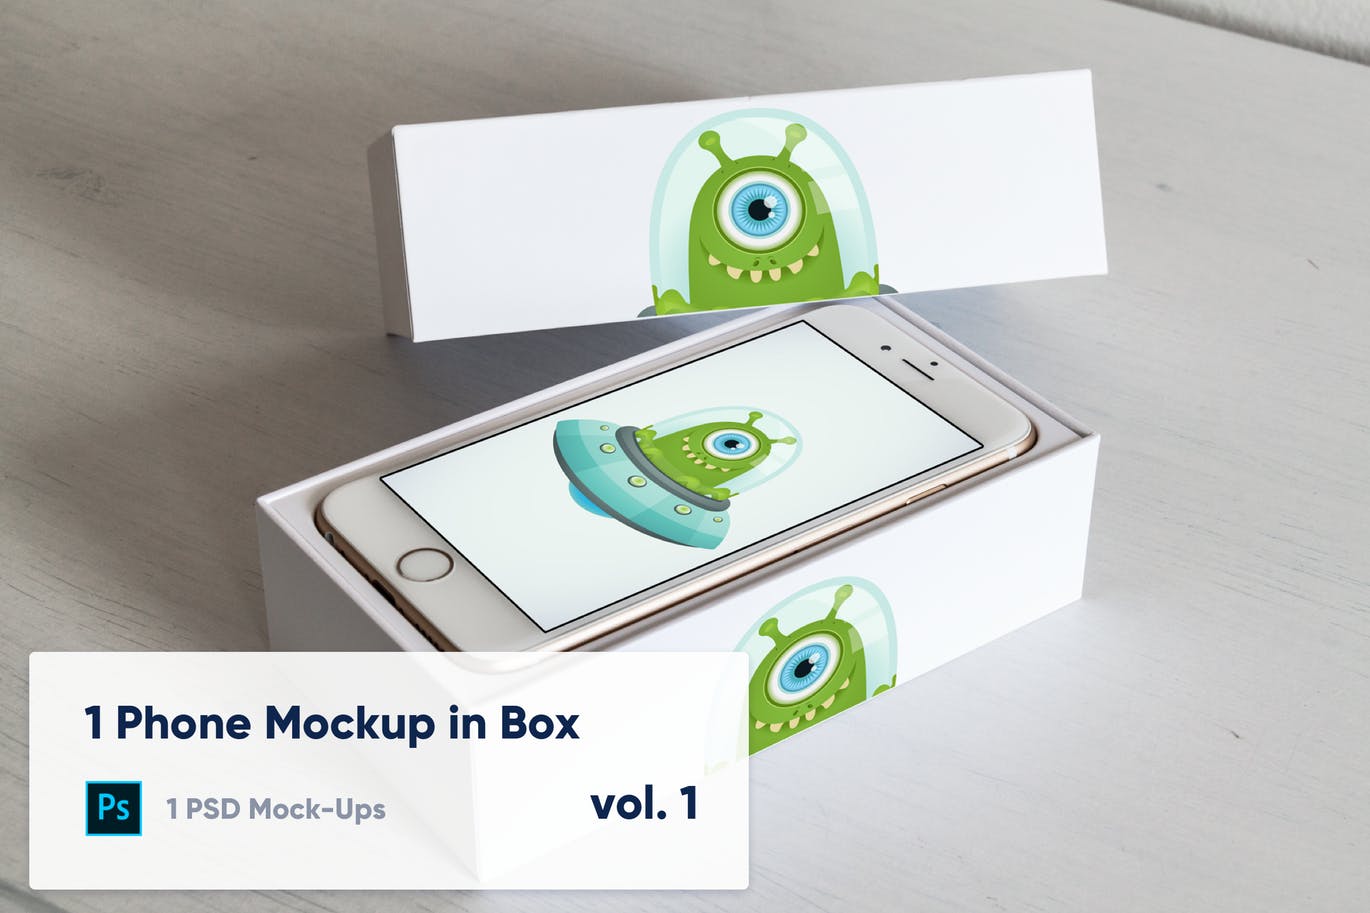 实体键盘iPhone手机开箱演示蚂蚁素材精选样机模板v1 1 Phone Mockup in Paper Box – Vol. 1插图